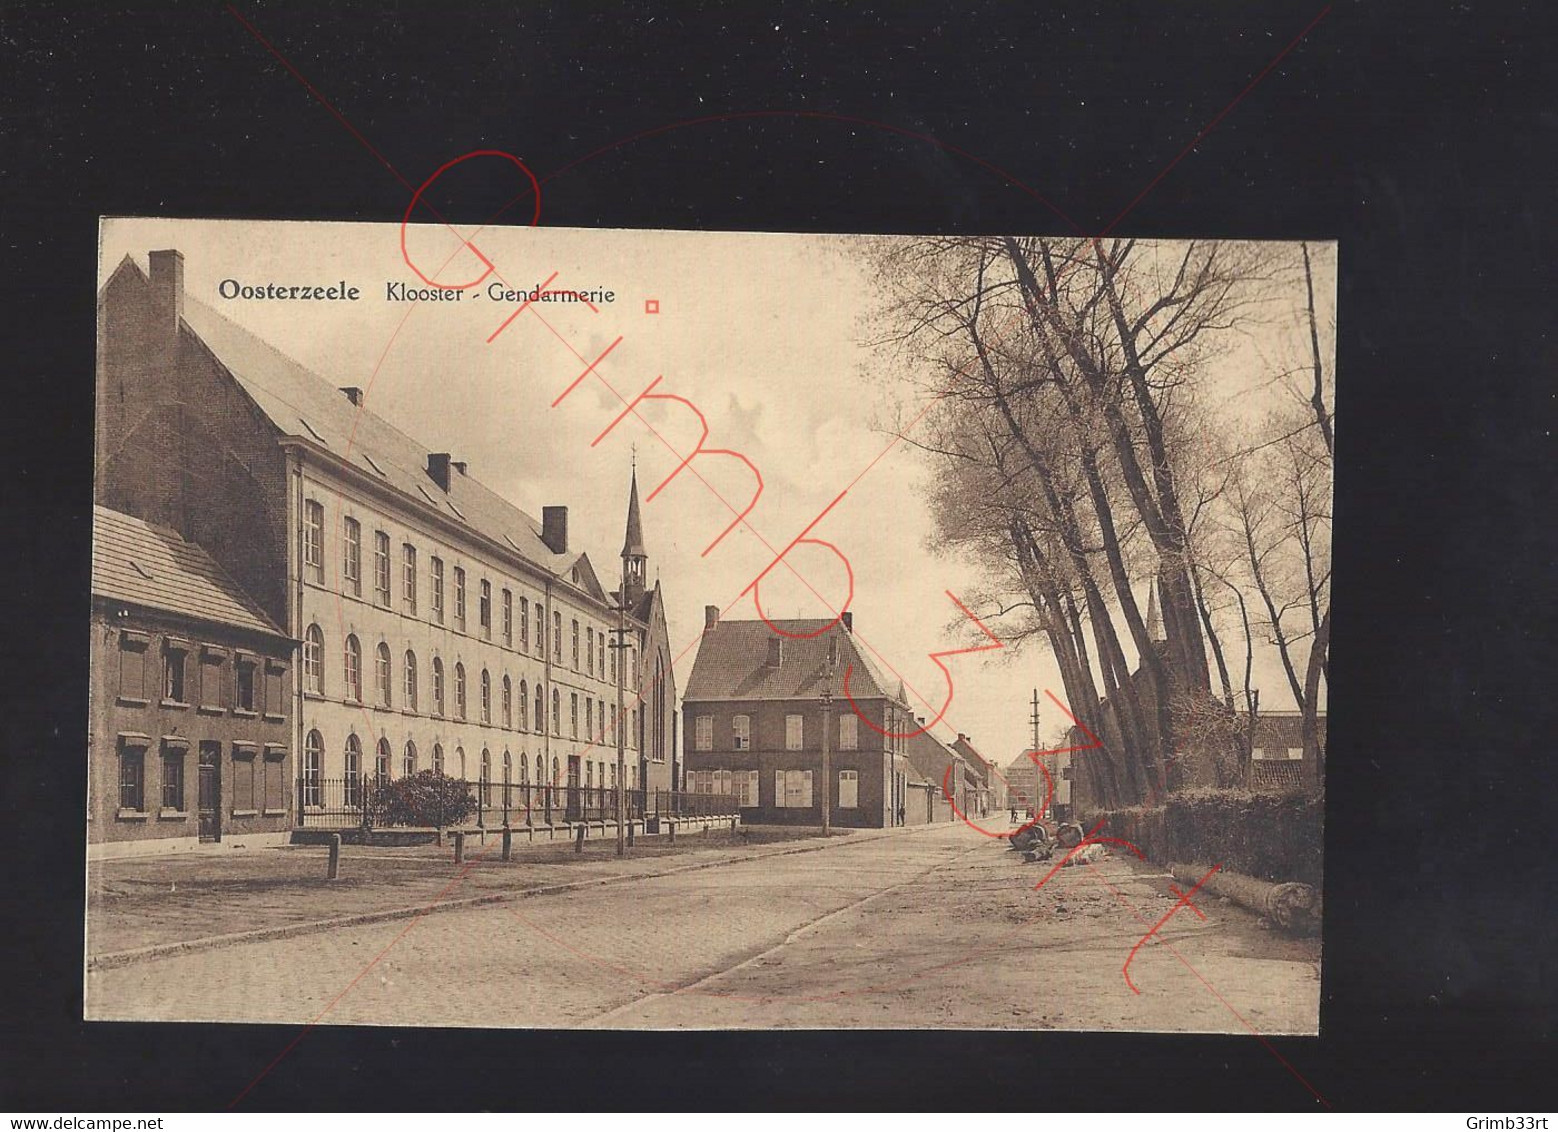 Oosterzeele - Klooster - Gendarmerie - Postkaart - Oosterzele